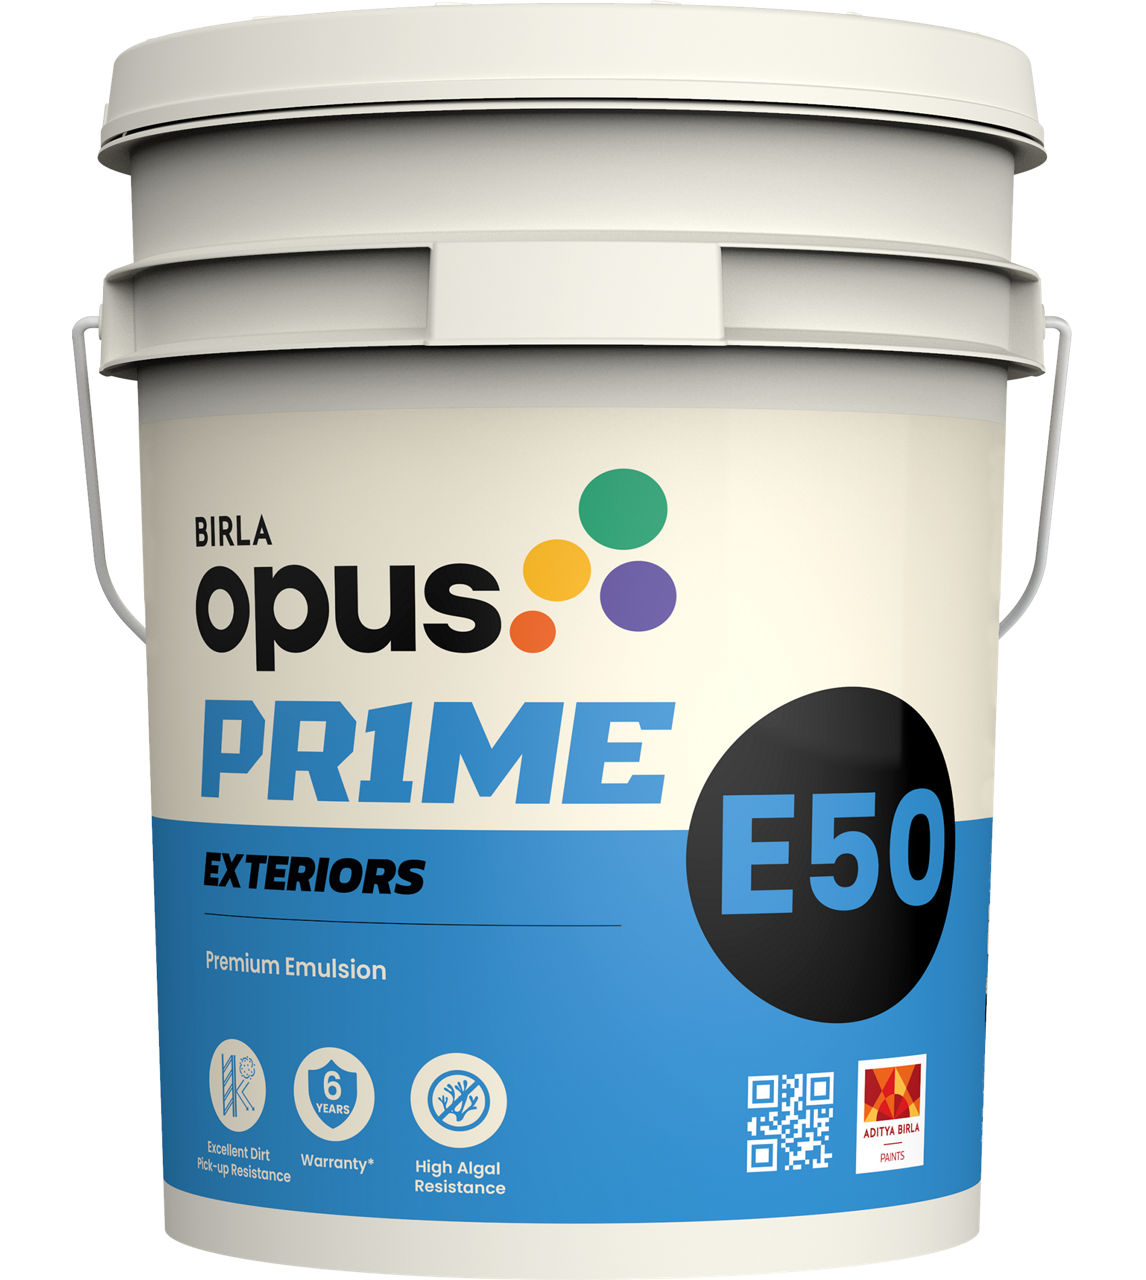 E50 Exteriors Premium Emulsion